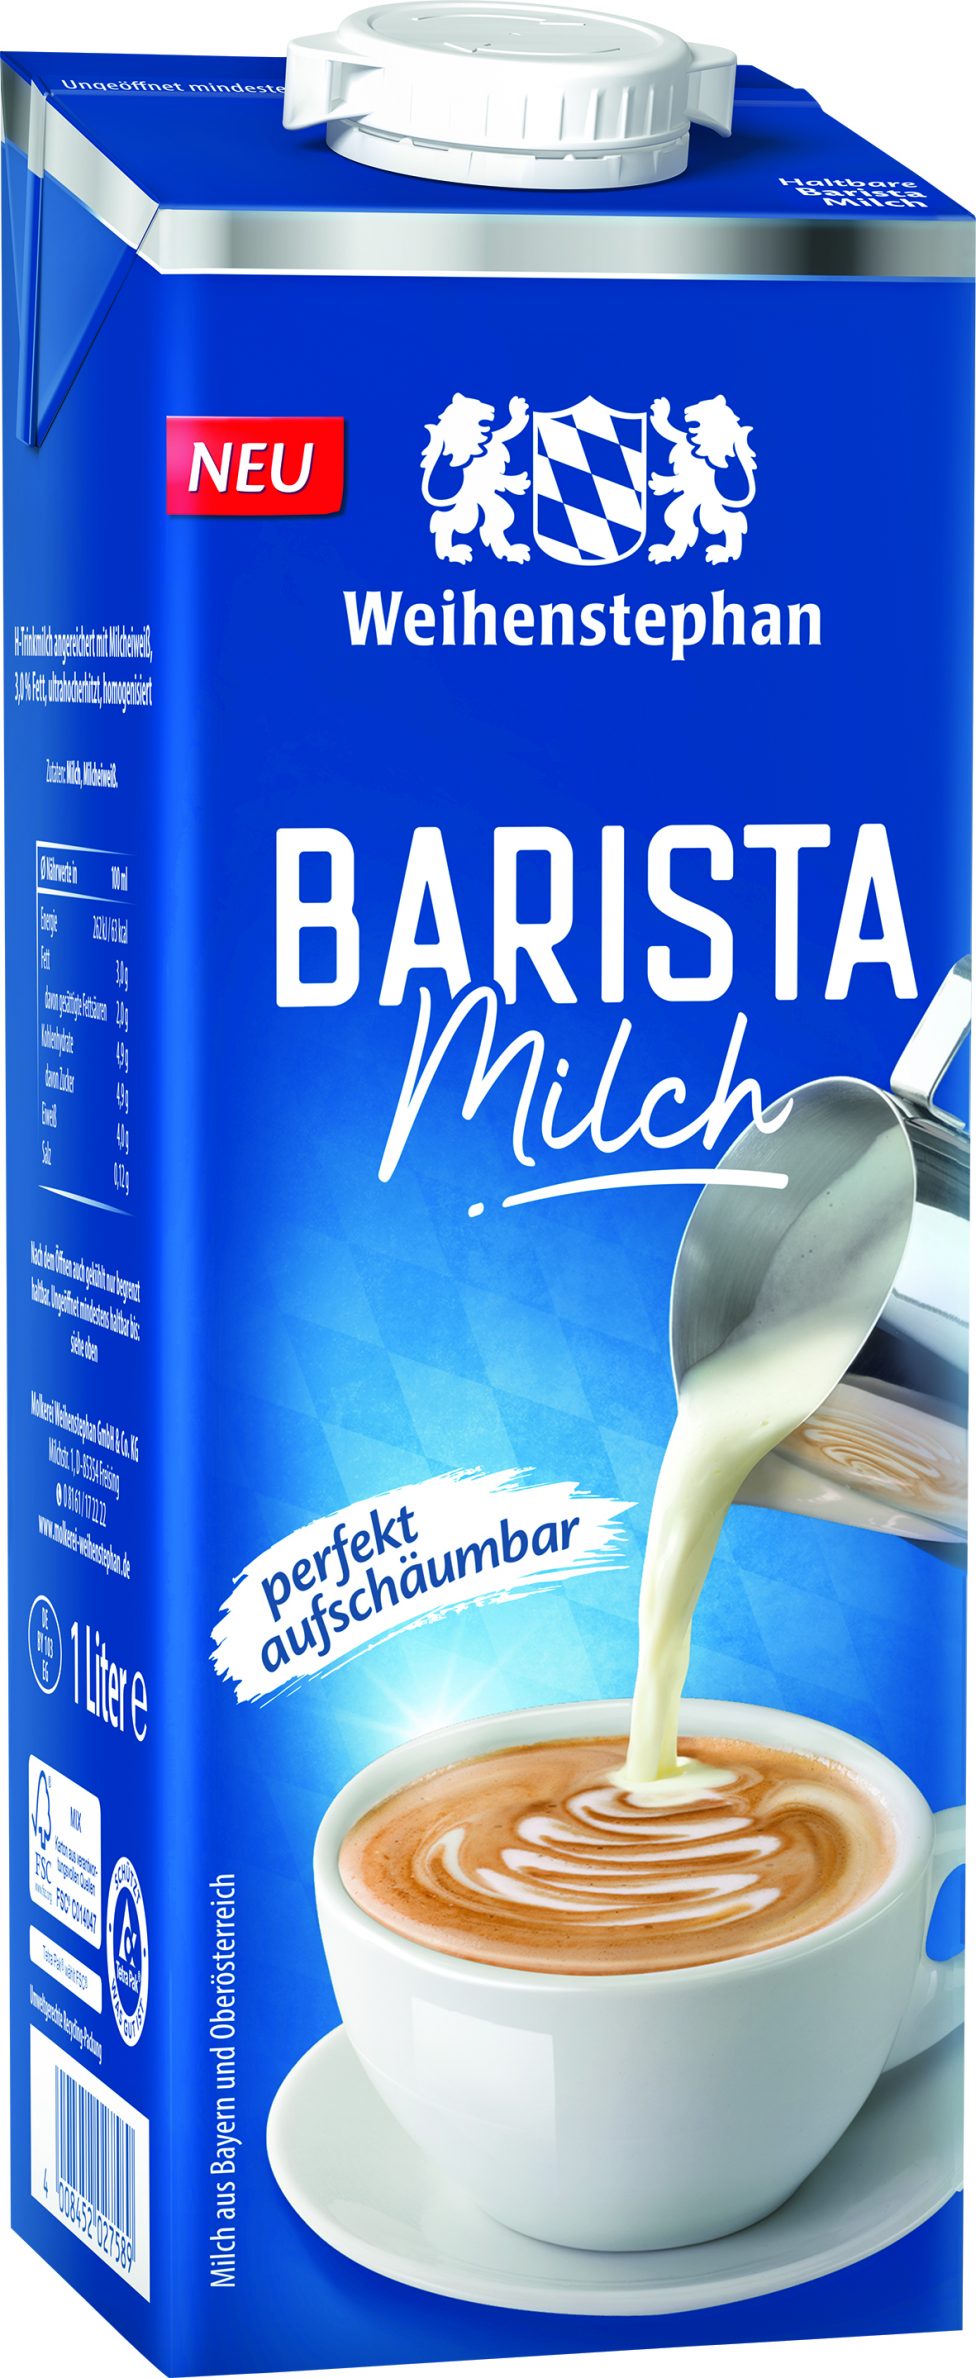 Weihenstephan Milchtasting: Woran erkennt man gute Milch?Biancas Blog